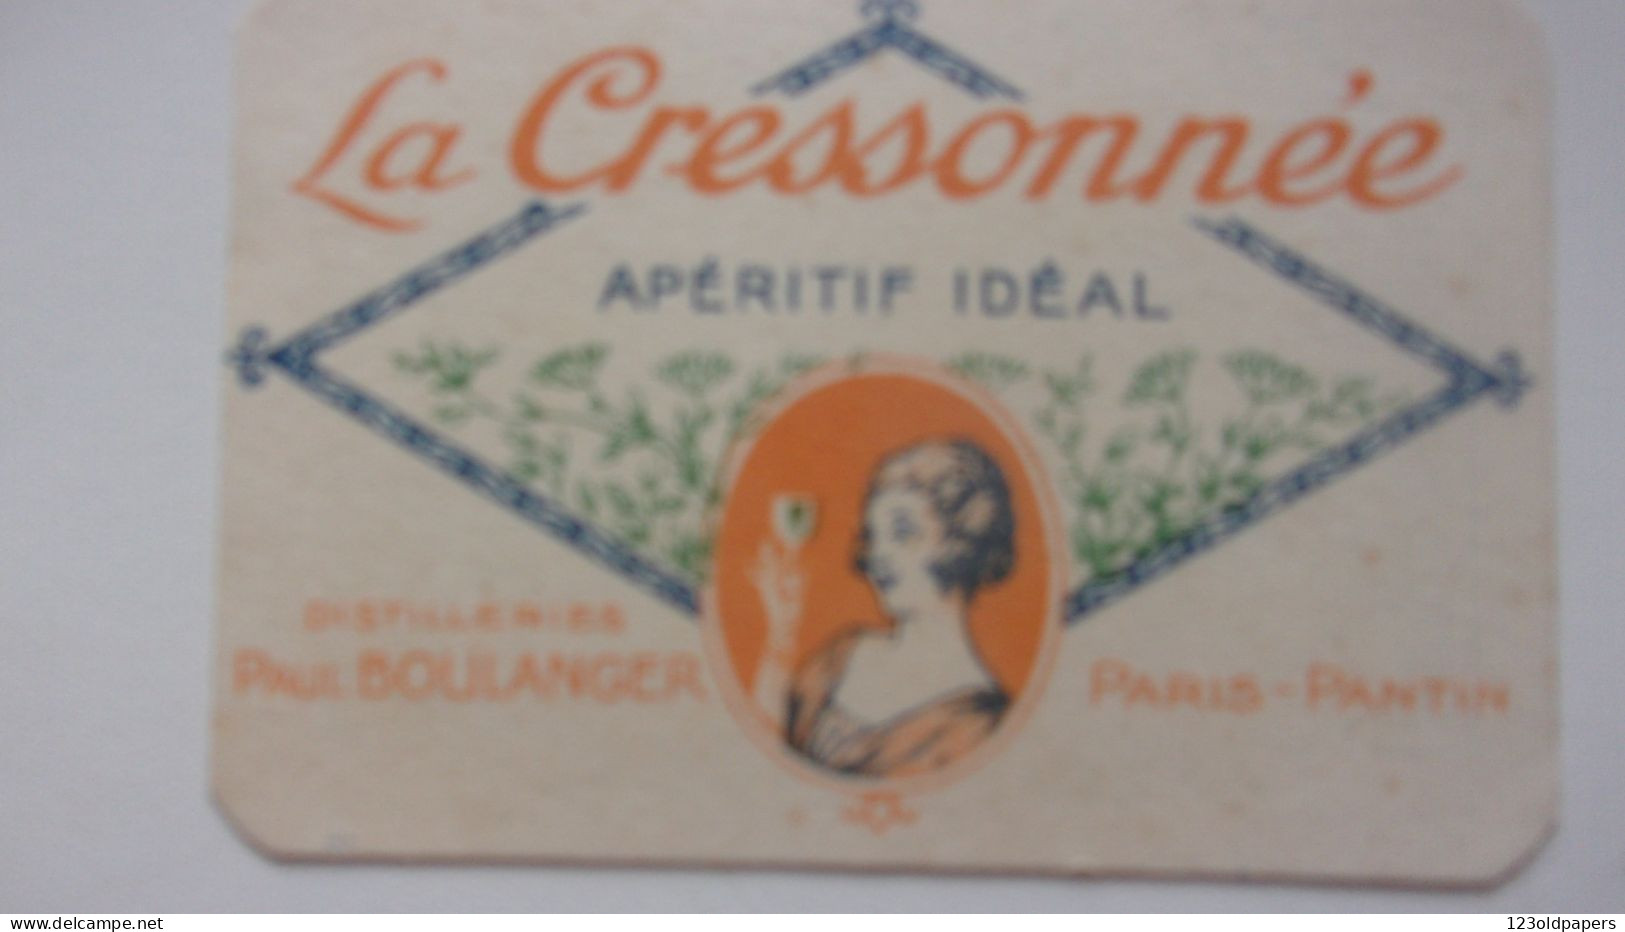 LA CRESSONNEE APERITIF IDEAL CALENDRIER 1928 PAUL BOULANGER PARIS PANTIN - Publicités